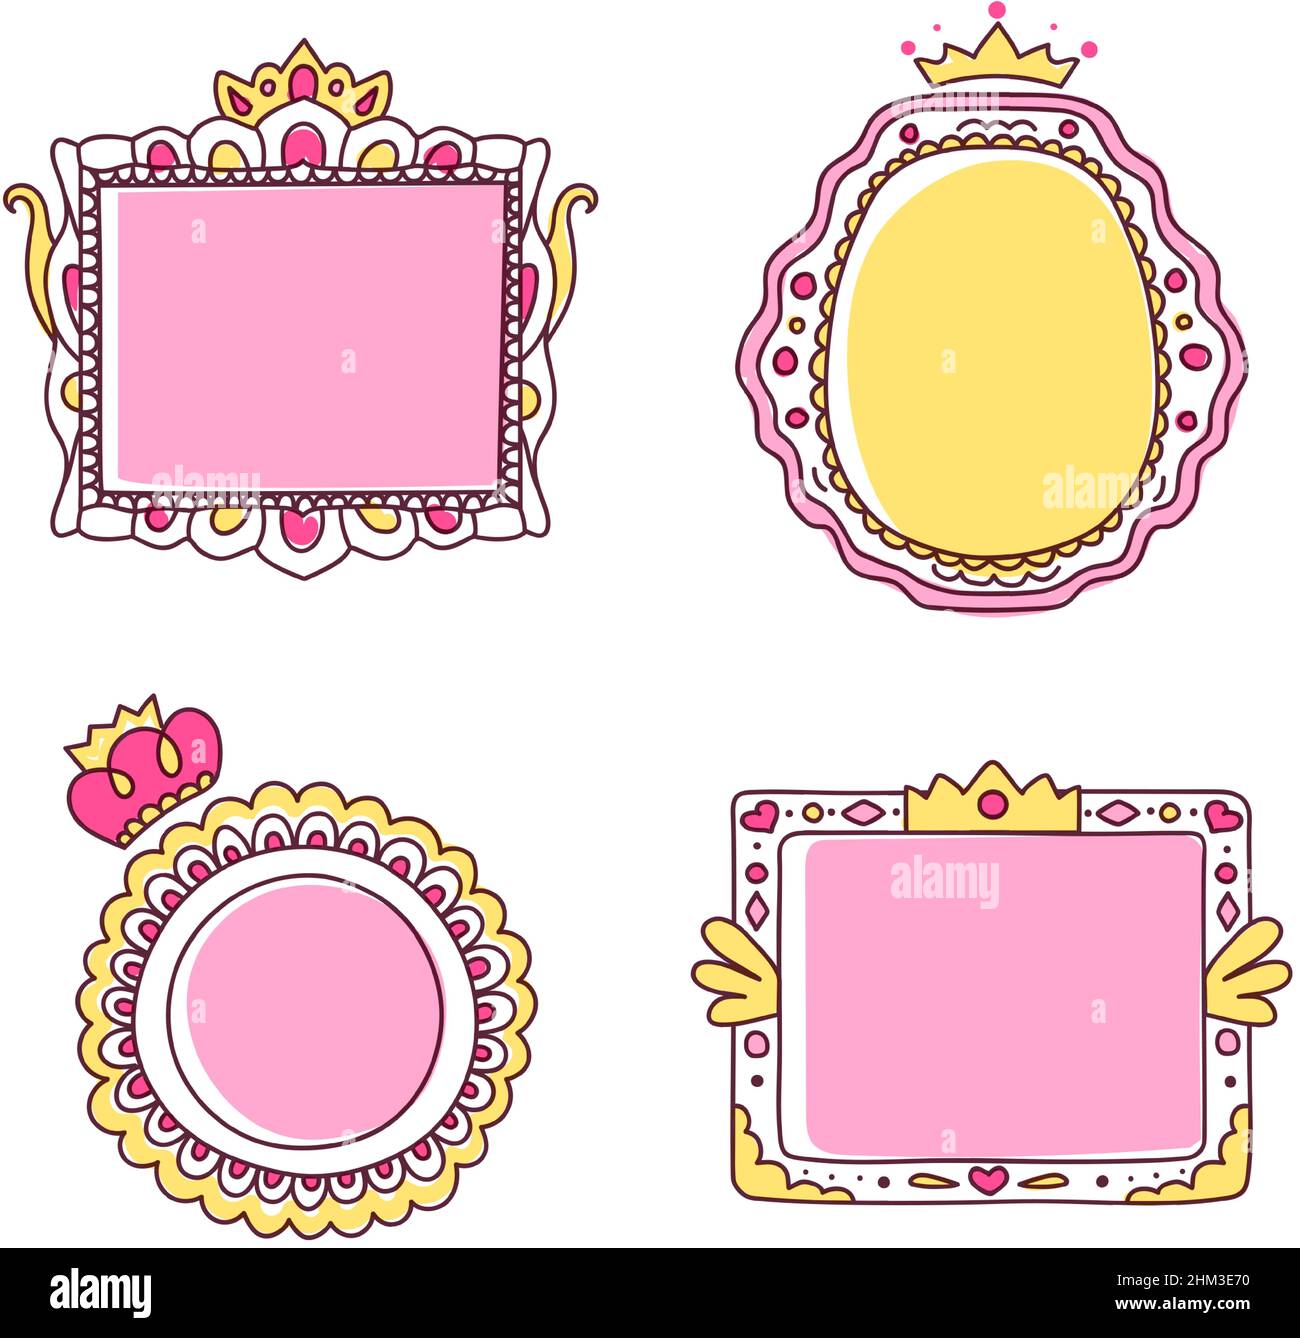 Bonitos marcos de princesa de color rosa dibujados a mano. Borde de espejo  con corona o tiara para la familia real. Marco de fotos para niñas o niños.  Conjunto de vectores aislados